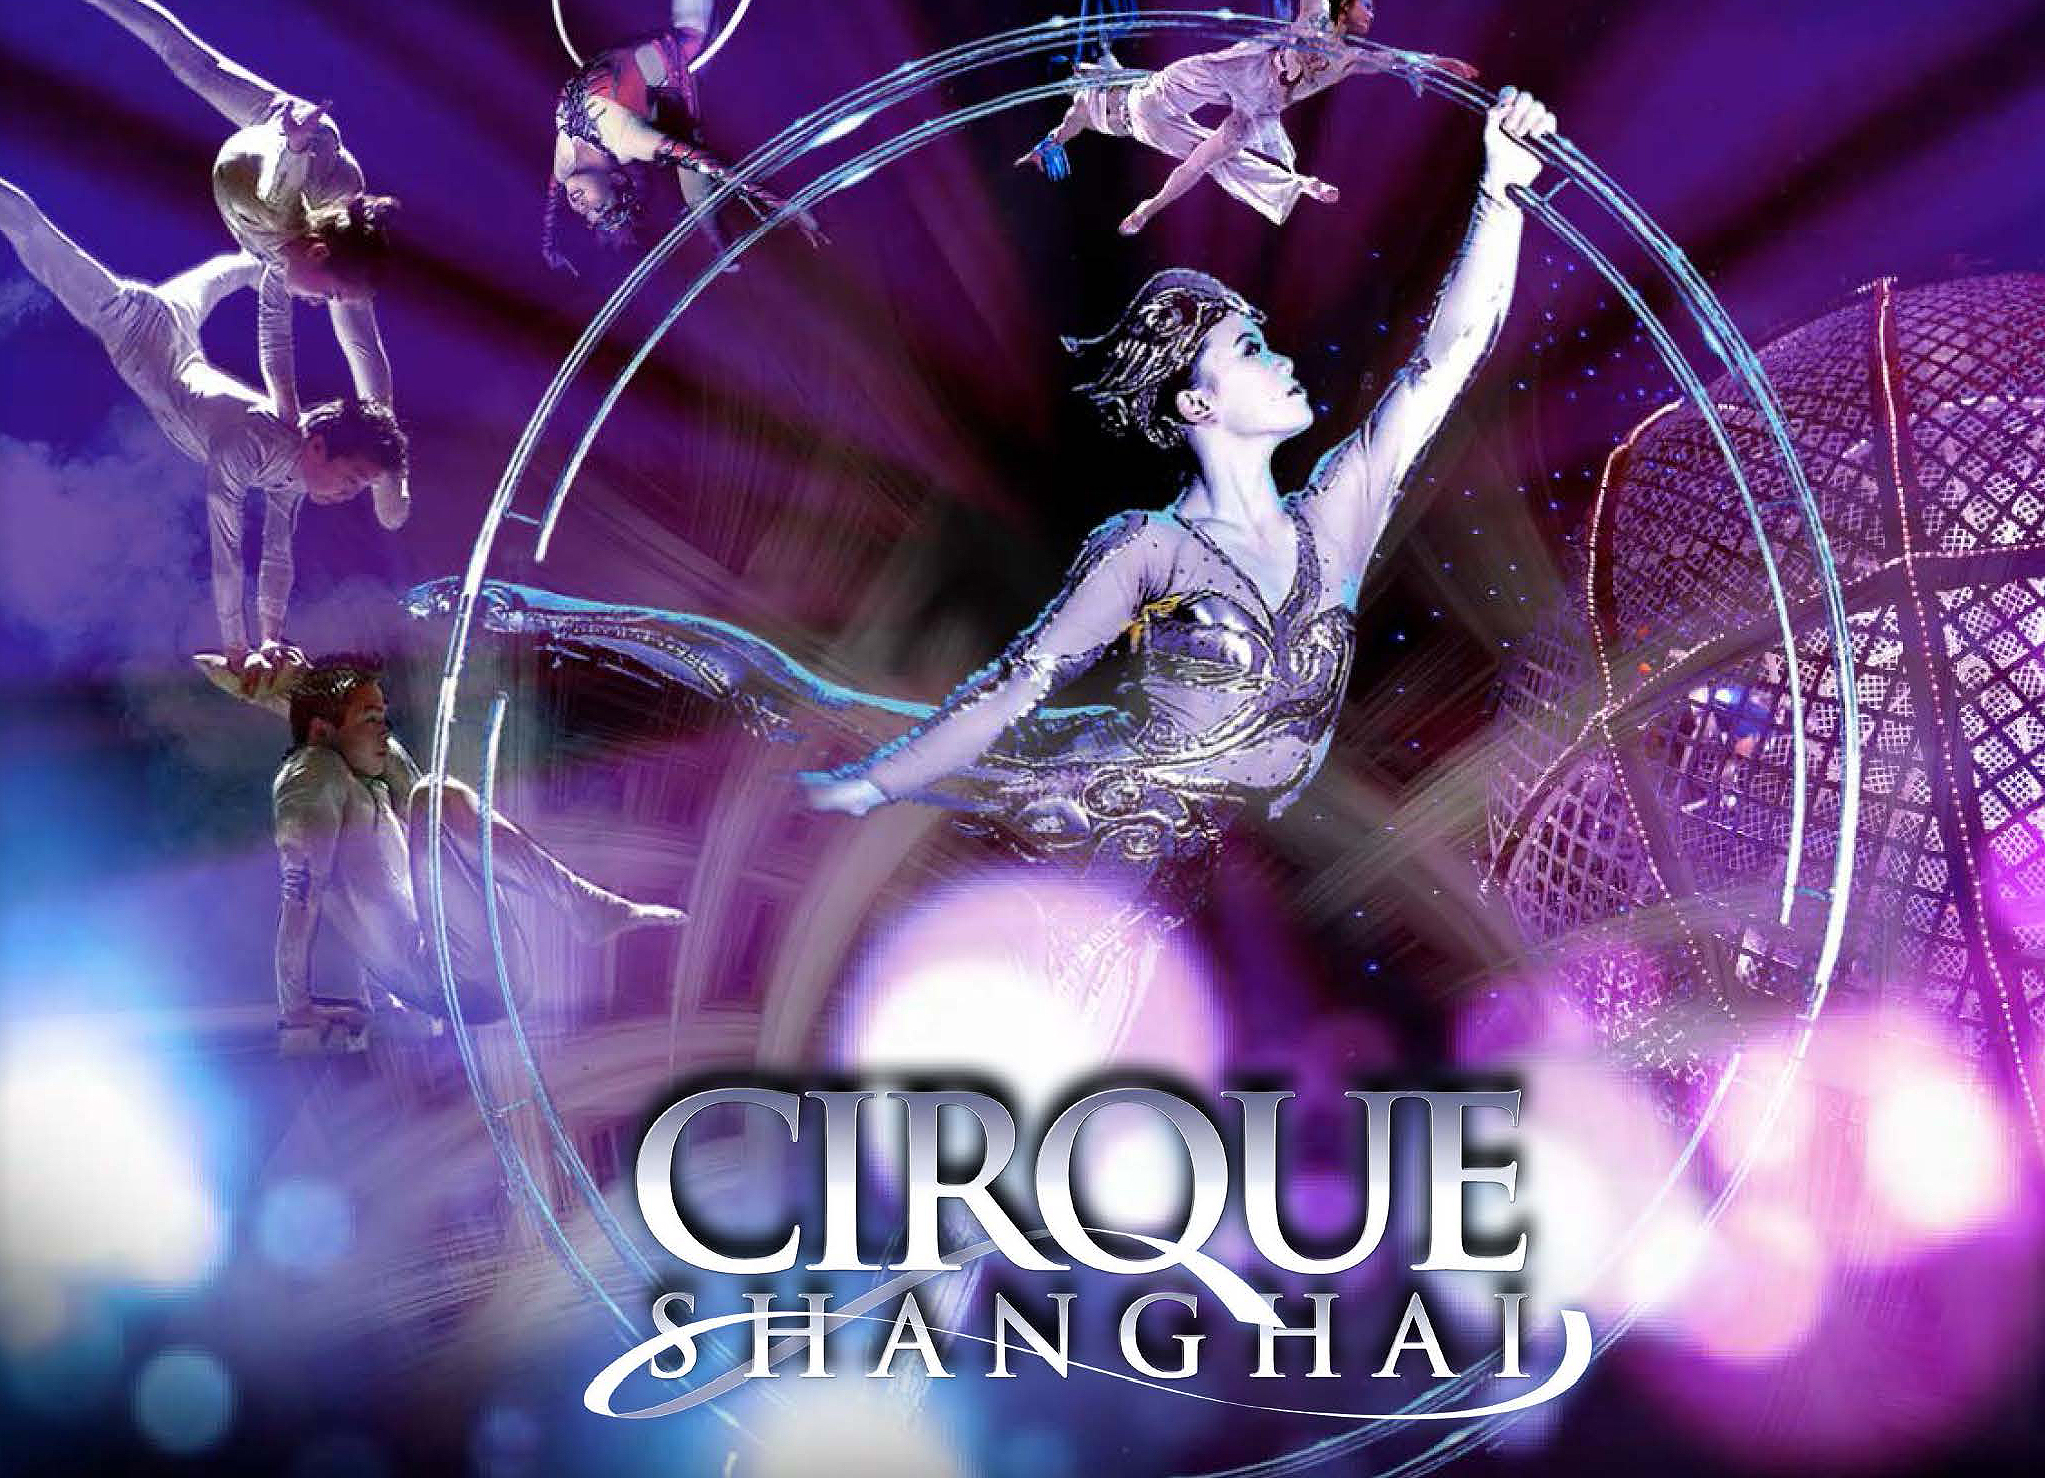 Cirque Shanghai